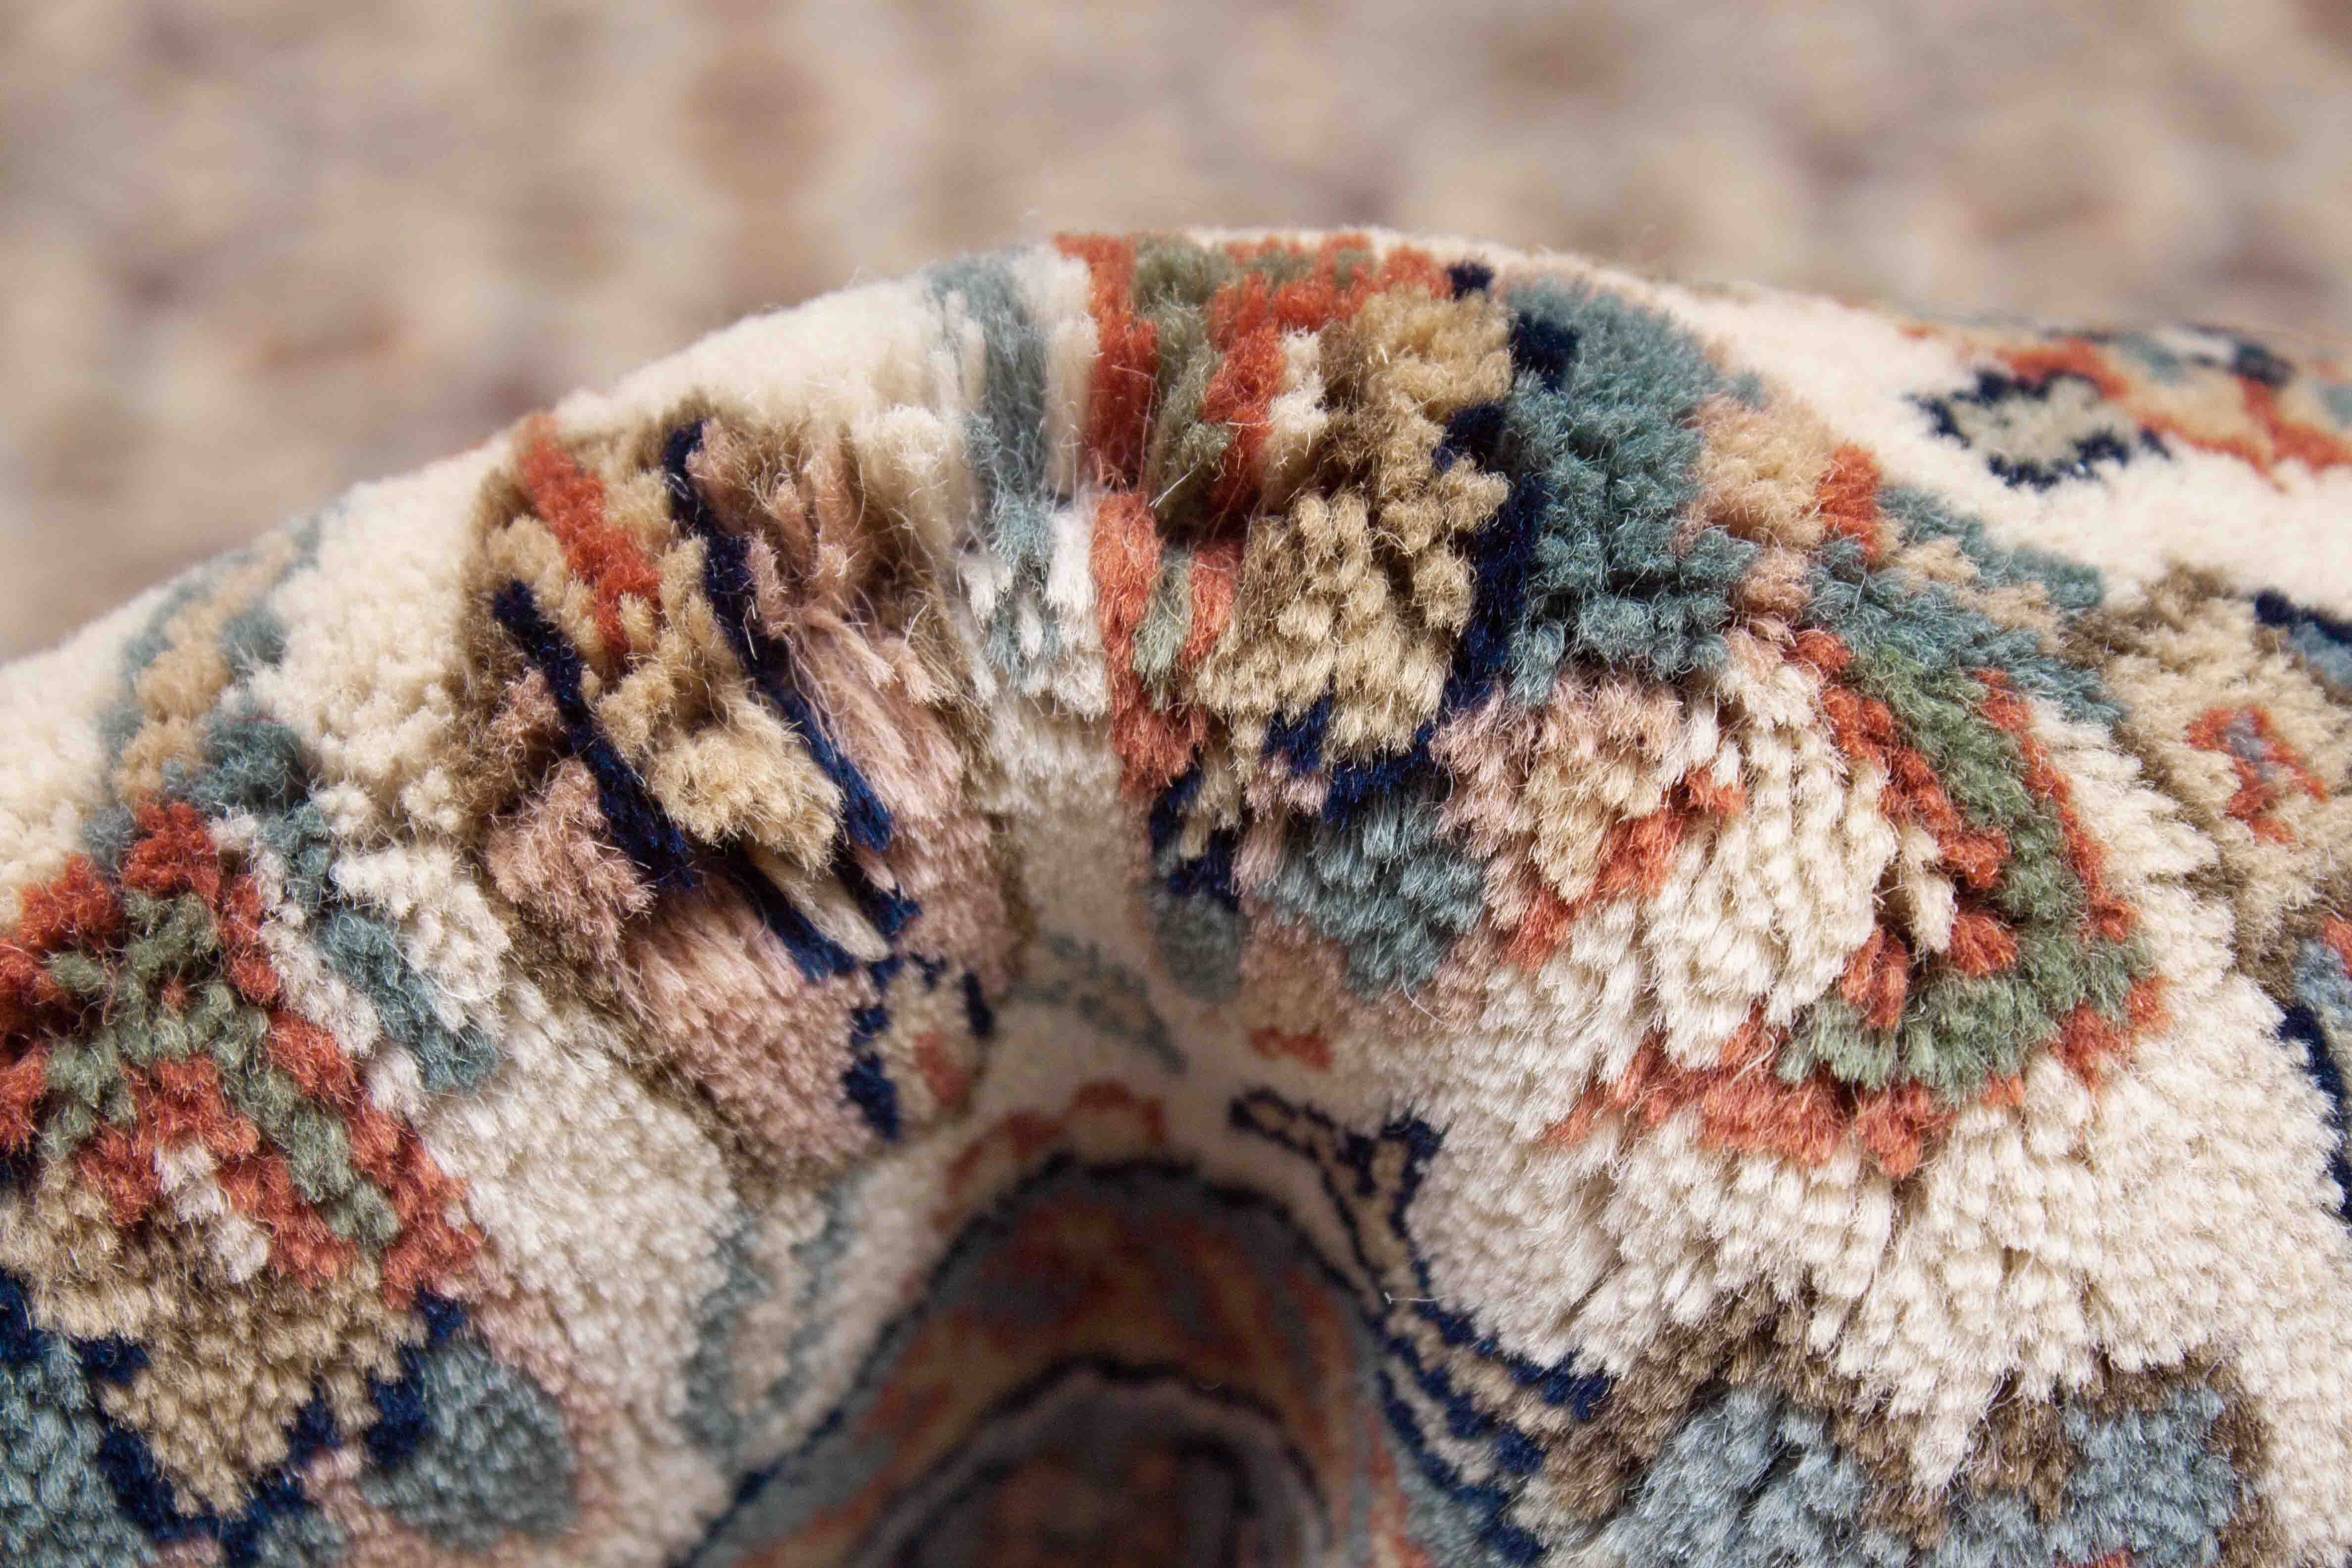 Eine Fotoaufnahme eines Herati Teppichs.